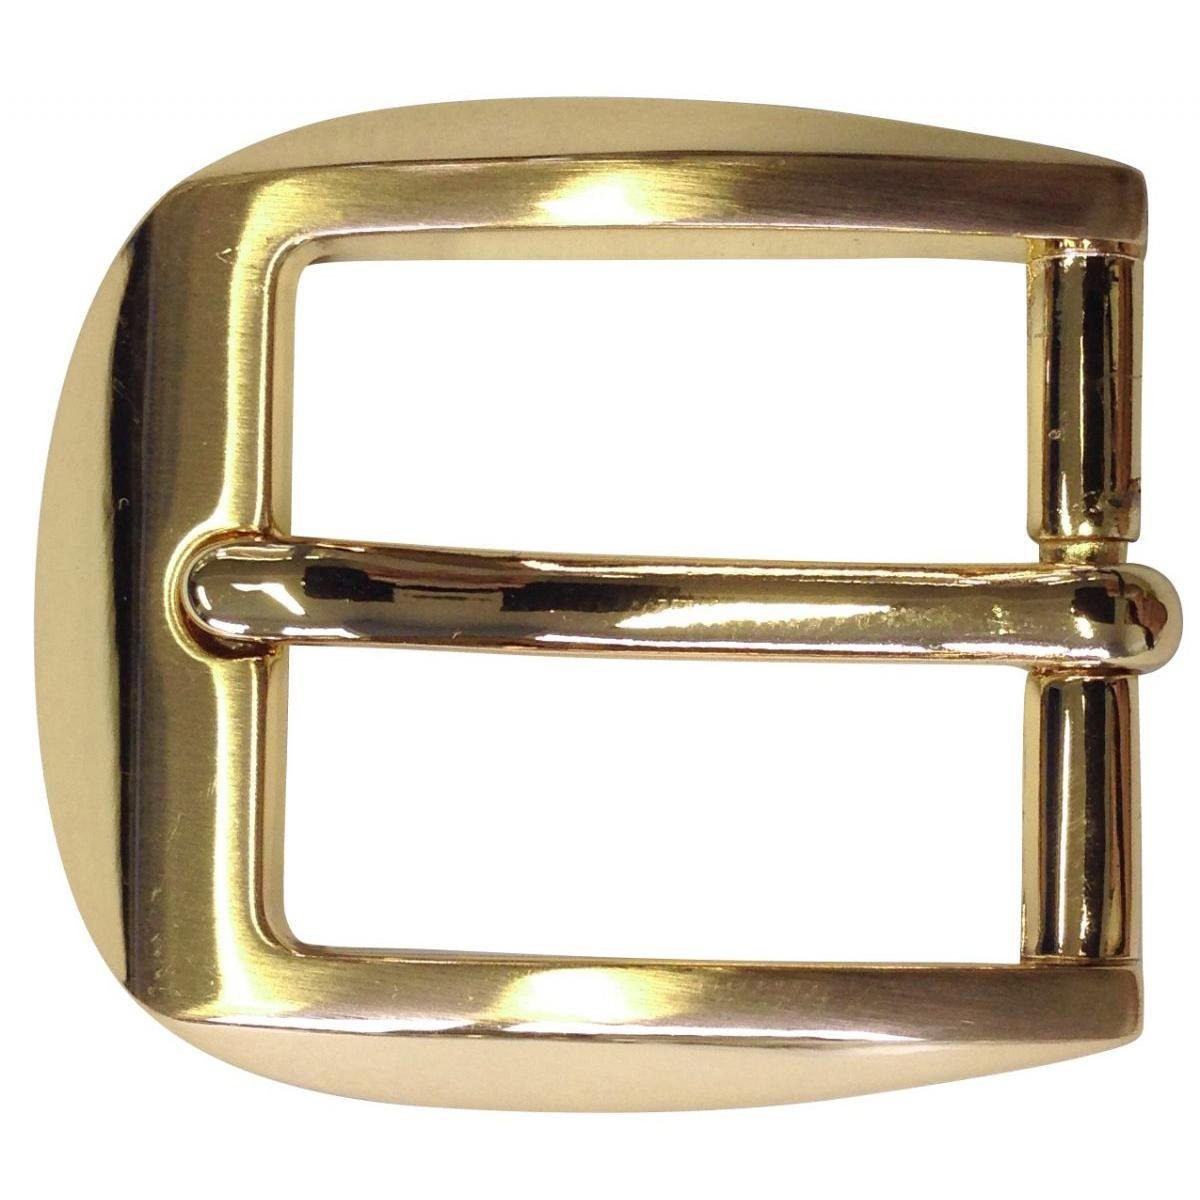 BELTINGER Gürtelschnalle 2,5 cm - Gürtelschließe 25mm - Dorn-Schließe - Gürtel bis zu 2.5cm Gold